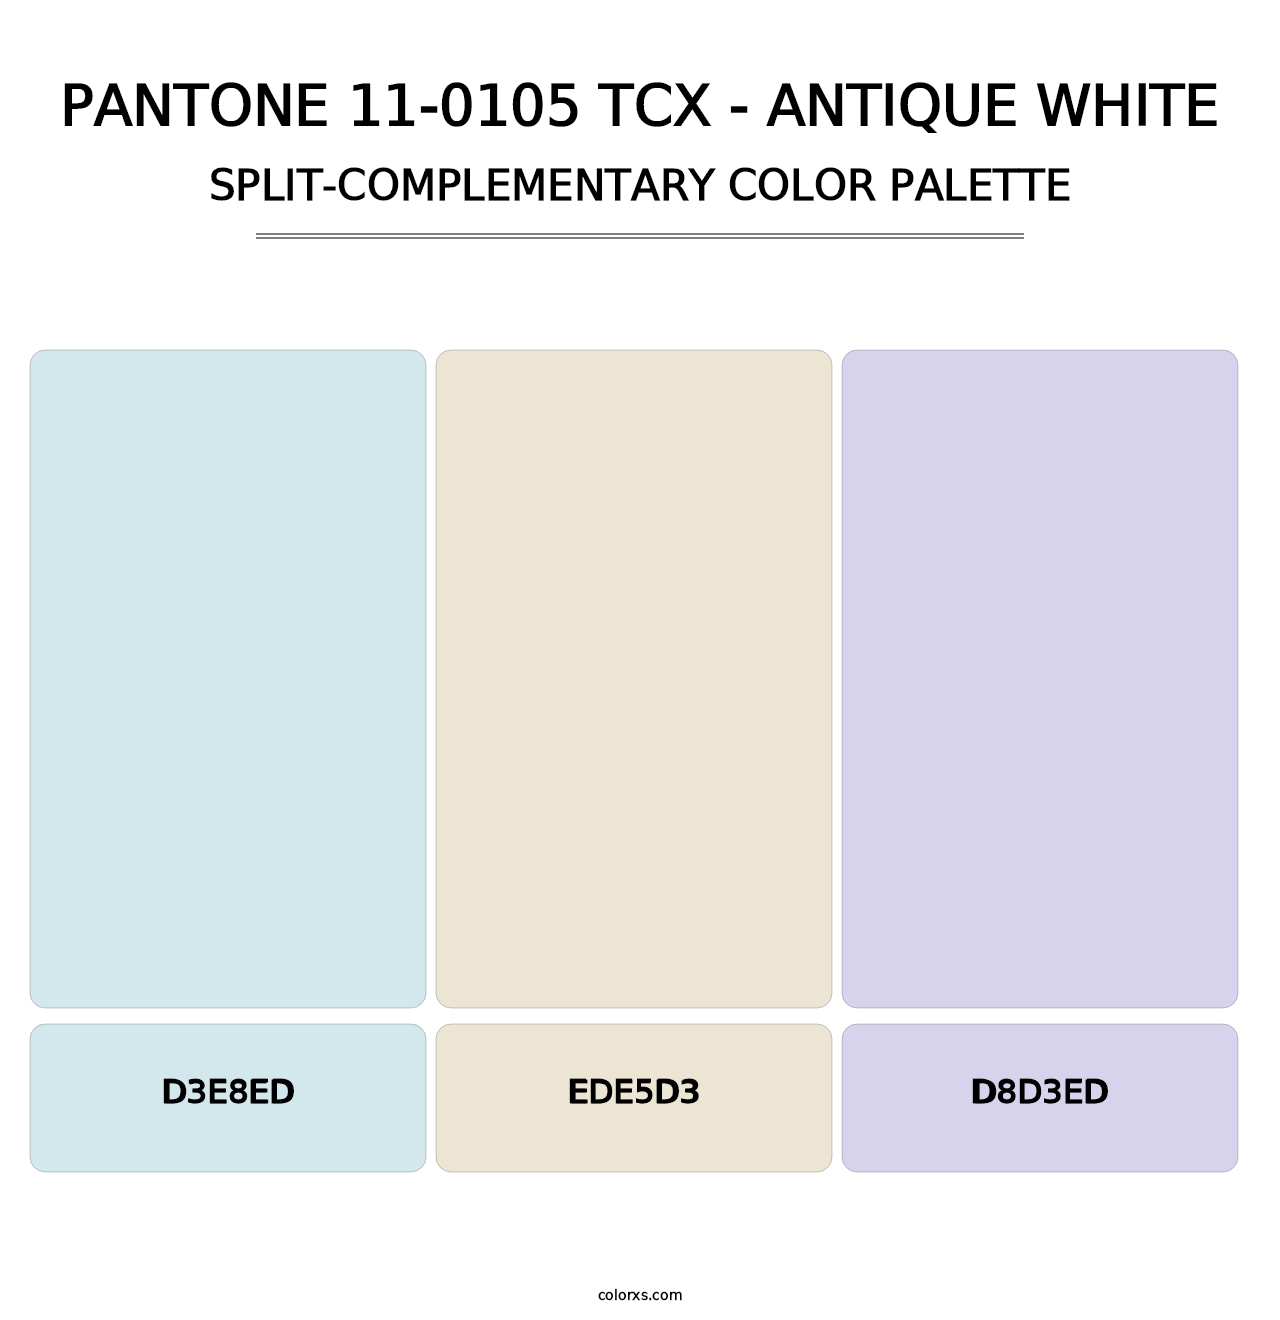 PANTONE 11-0105 TCX - Antique White - Split-Complementary Color Palette